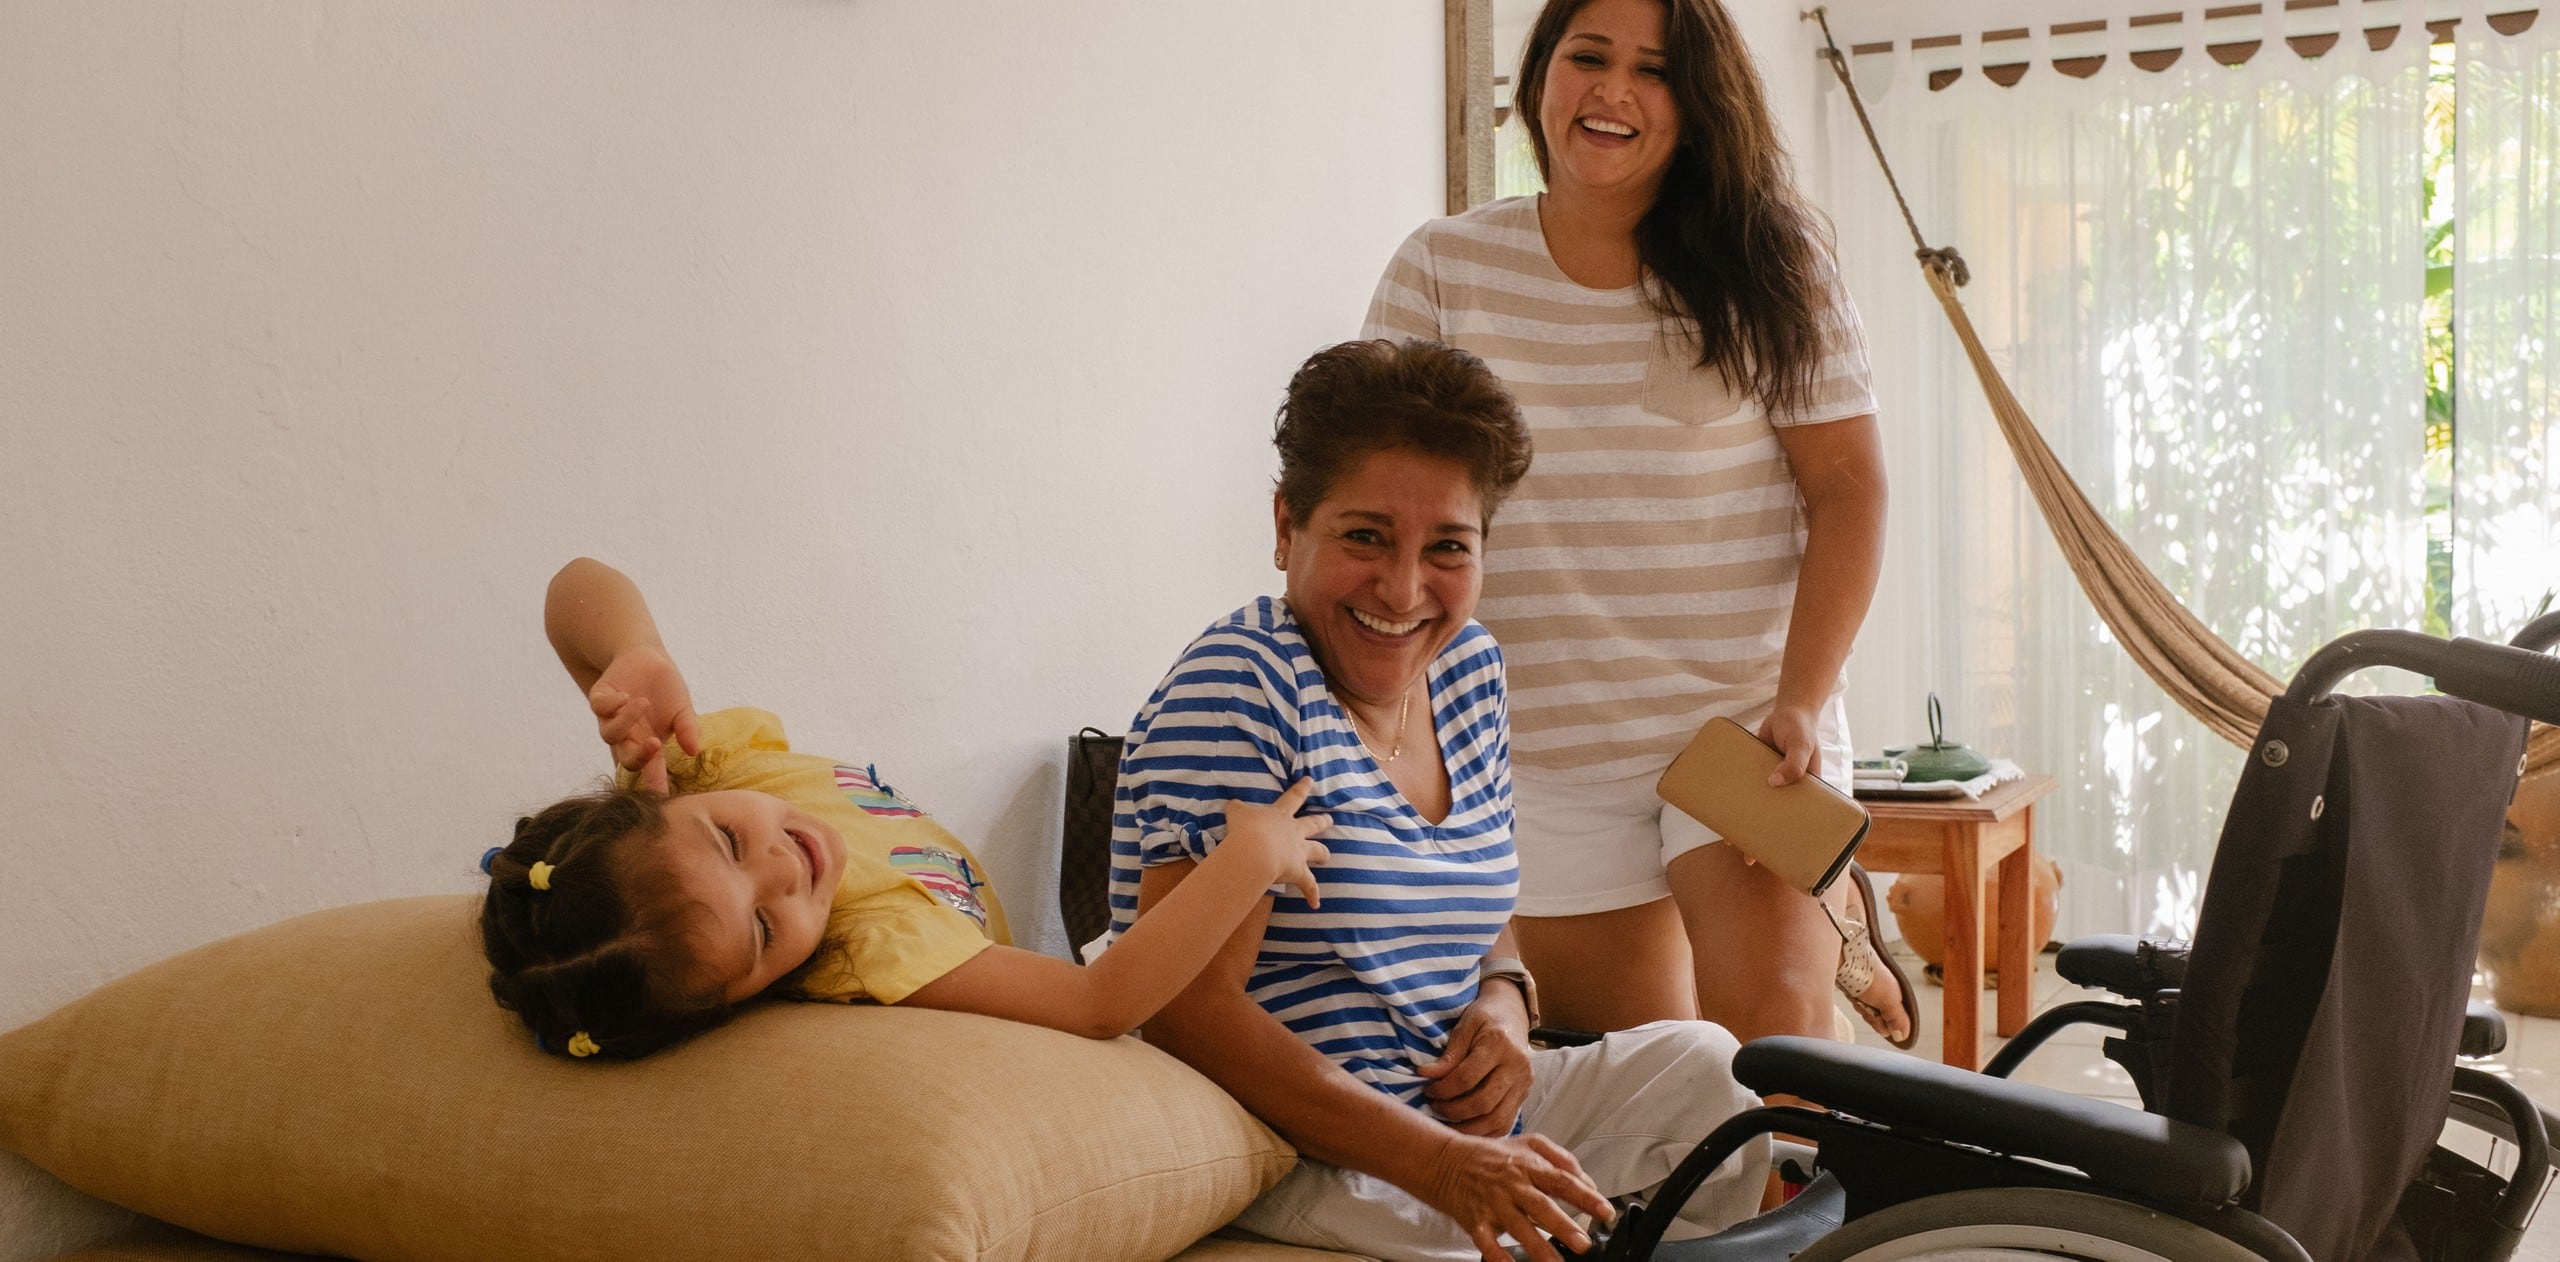 Tres generaciones de familias riendo en un alojamiento accesible en Airbnb. Enfrente del familiar mayor se encuentra una silla de ruedas.